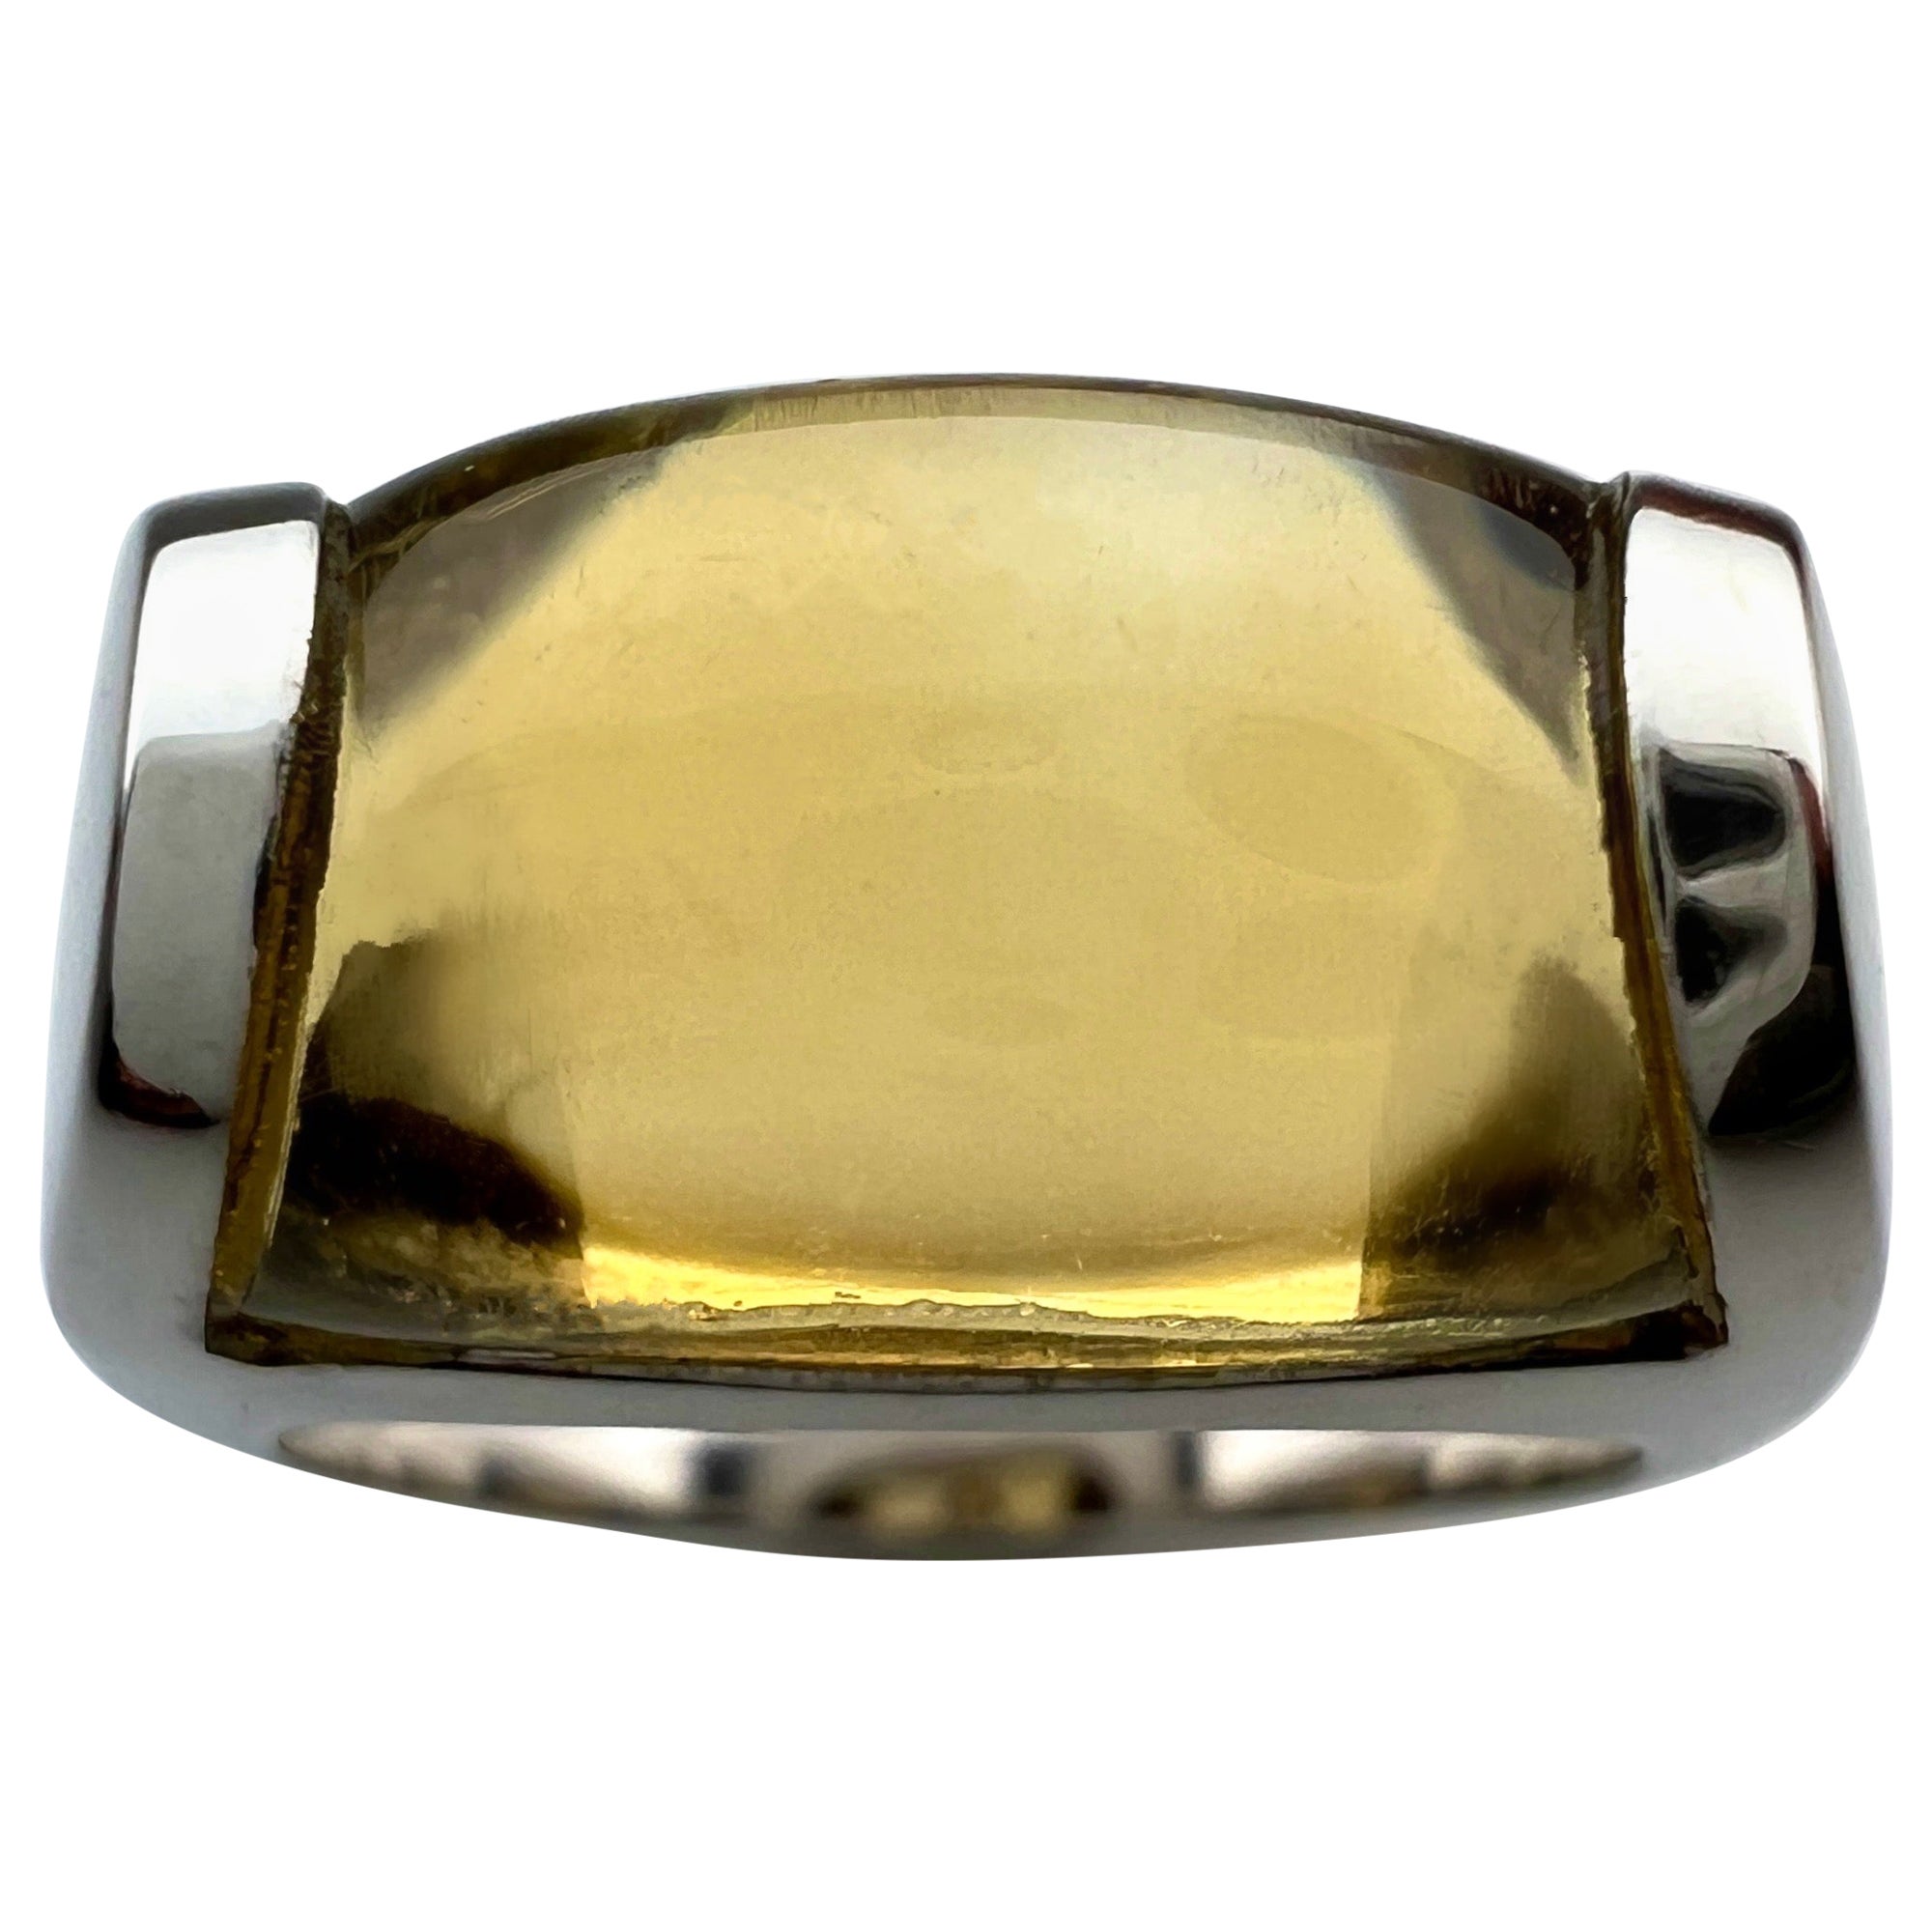 Rare Bvlgari Bulgari Tronchetto 18k White Gold Yellow Citrine Ring with Box